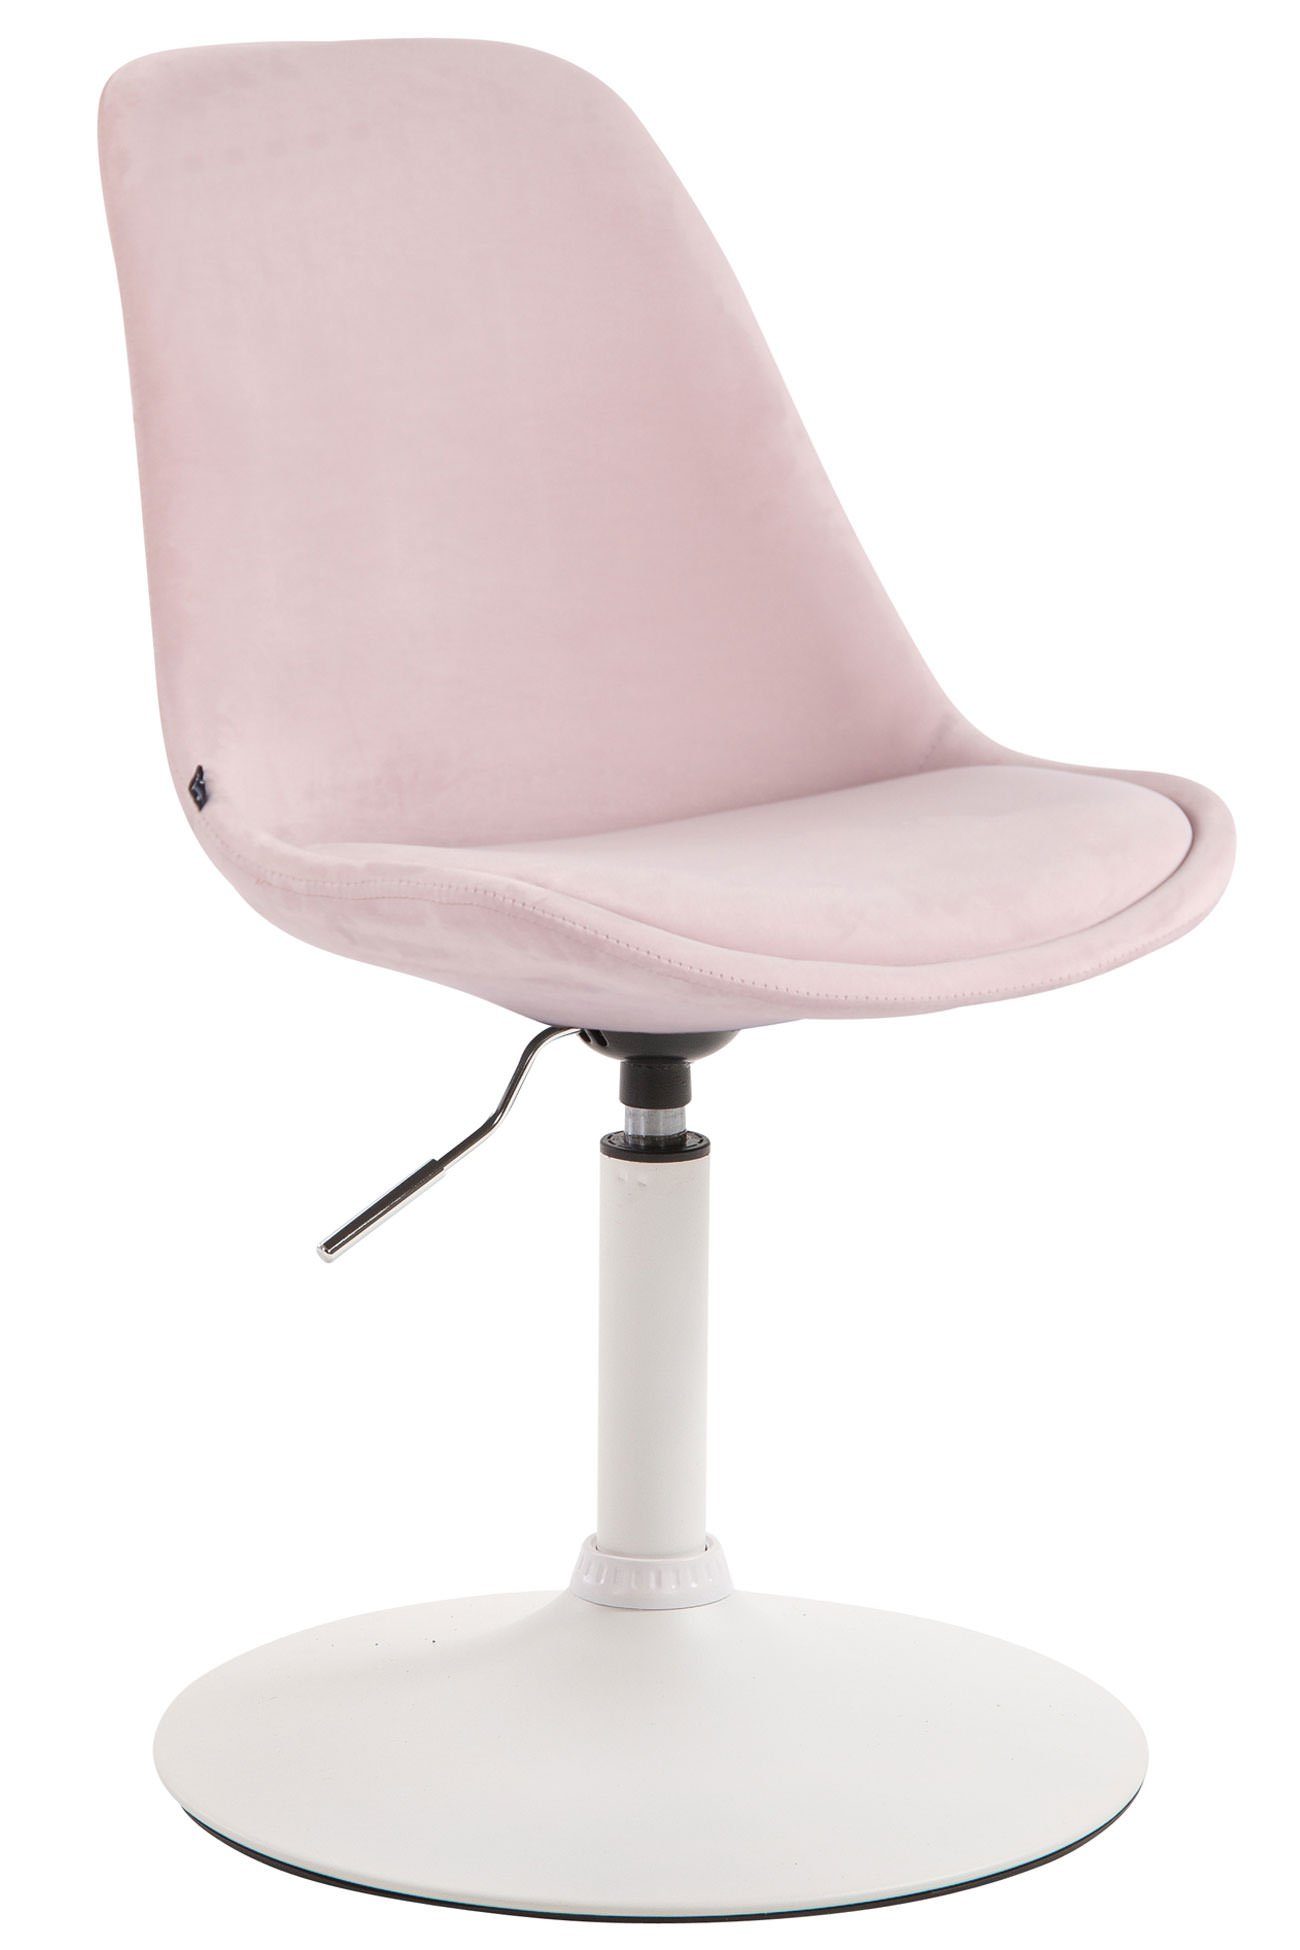 TPFLiving Esszimmerstuhl Mavic mit hochwertig gepolsterter Sitzfläche - Konferenzstuhl (Küchenstuhl - Esstischstuhl - Wohnzimmerstuhl - Polsterstuhl), Gestell: Metall weiß - Sitzfläche: Samt pink | Stühle